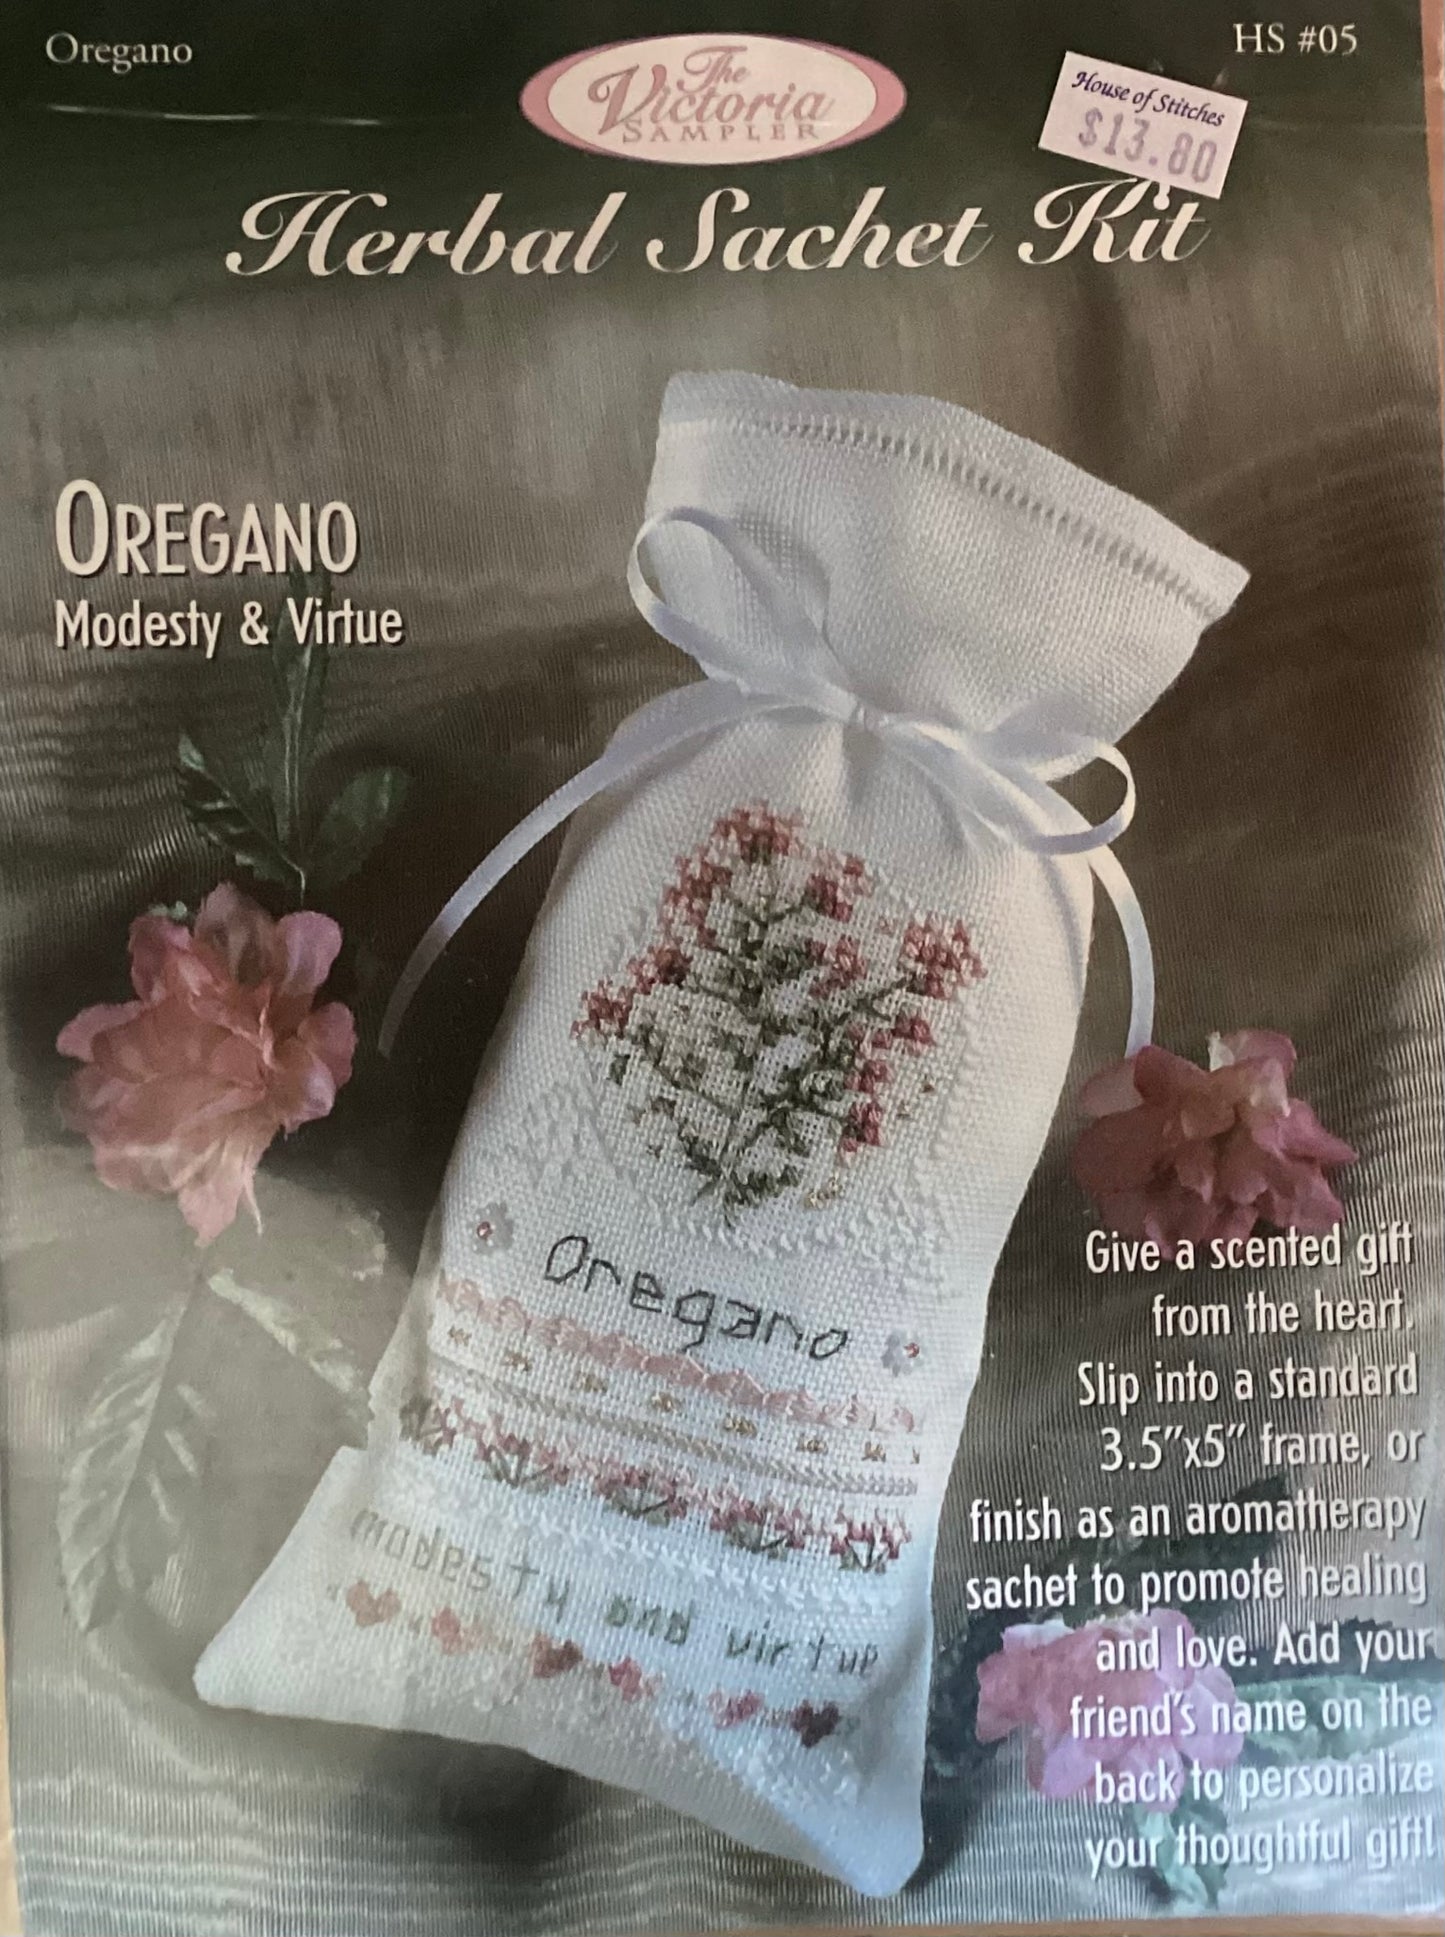 Herbal Sachet Kit - Oregano By The Victoria Sampler